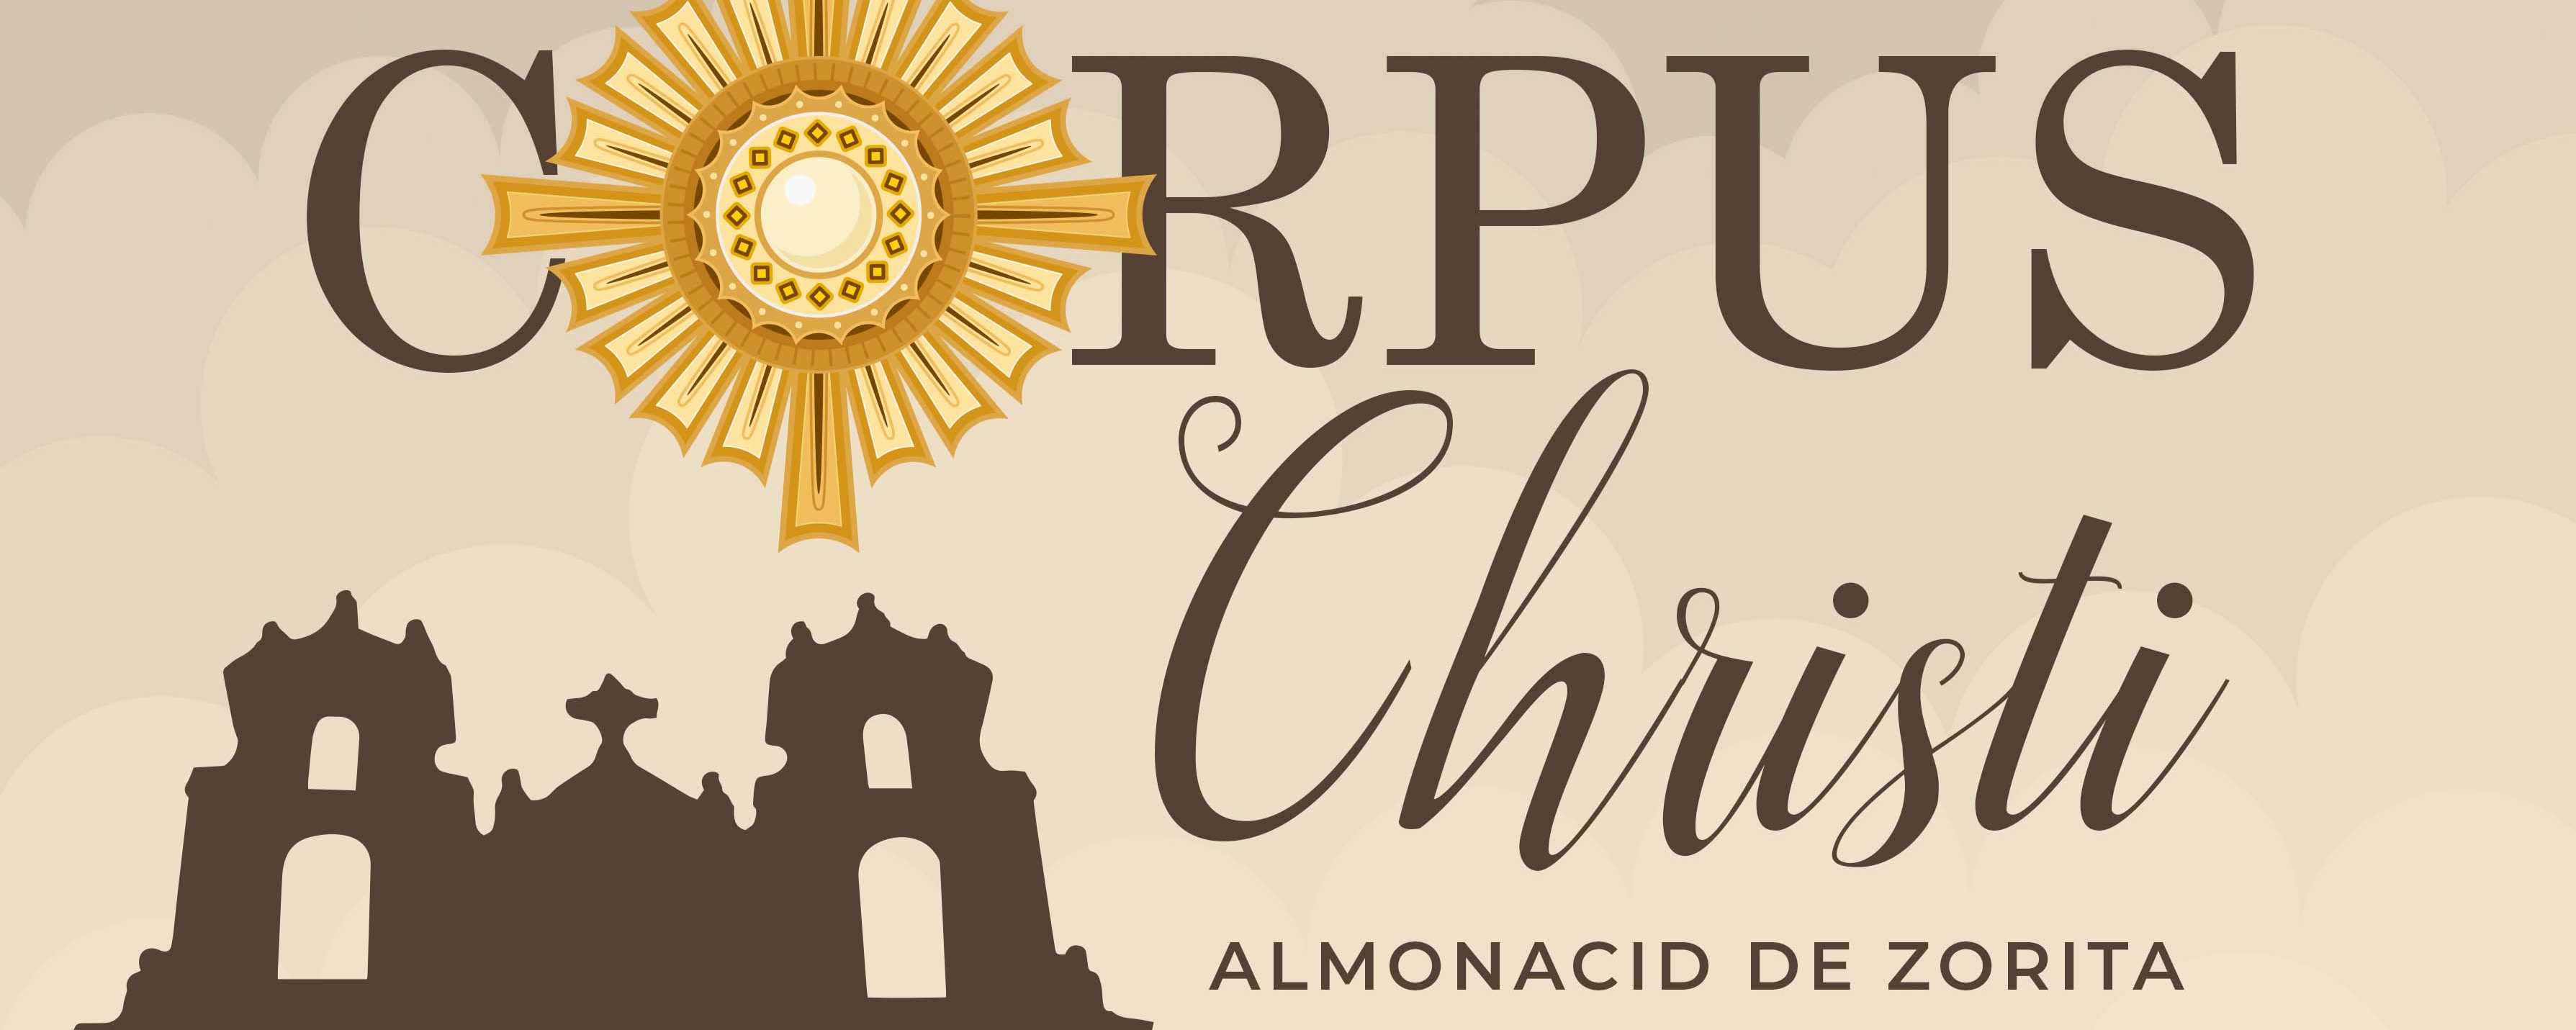 Este domingo, fiesta del Corpus Christi en Almonacid de Zorita